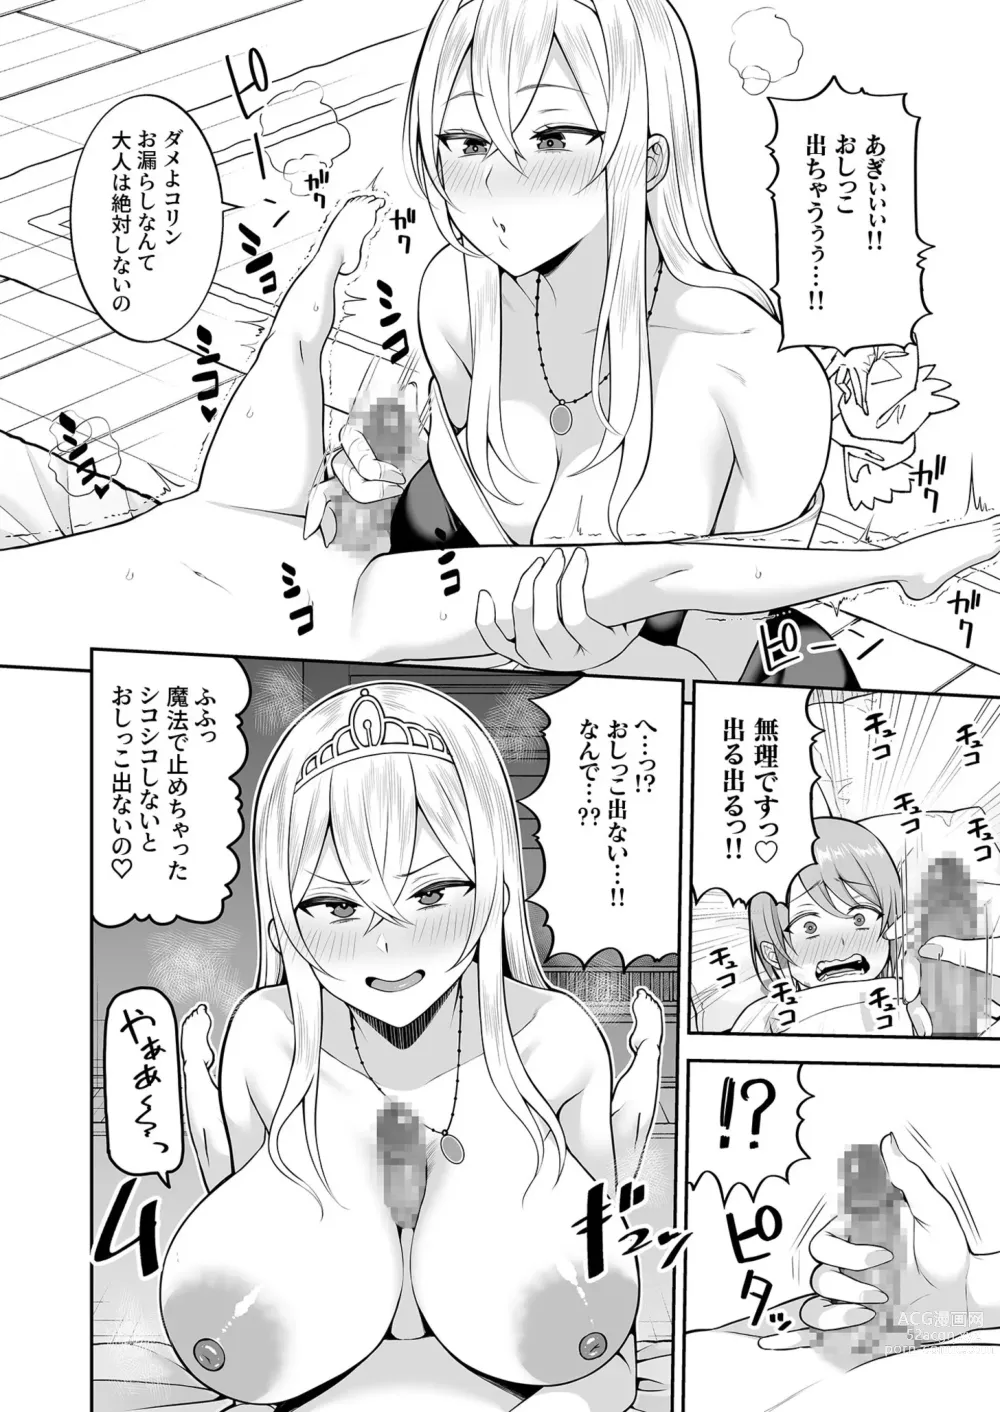 Page 10 of manga Valerie Monogatari 3 〜Suki nishi te ii no yo〜